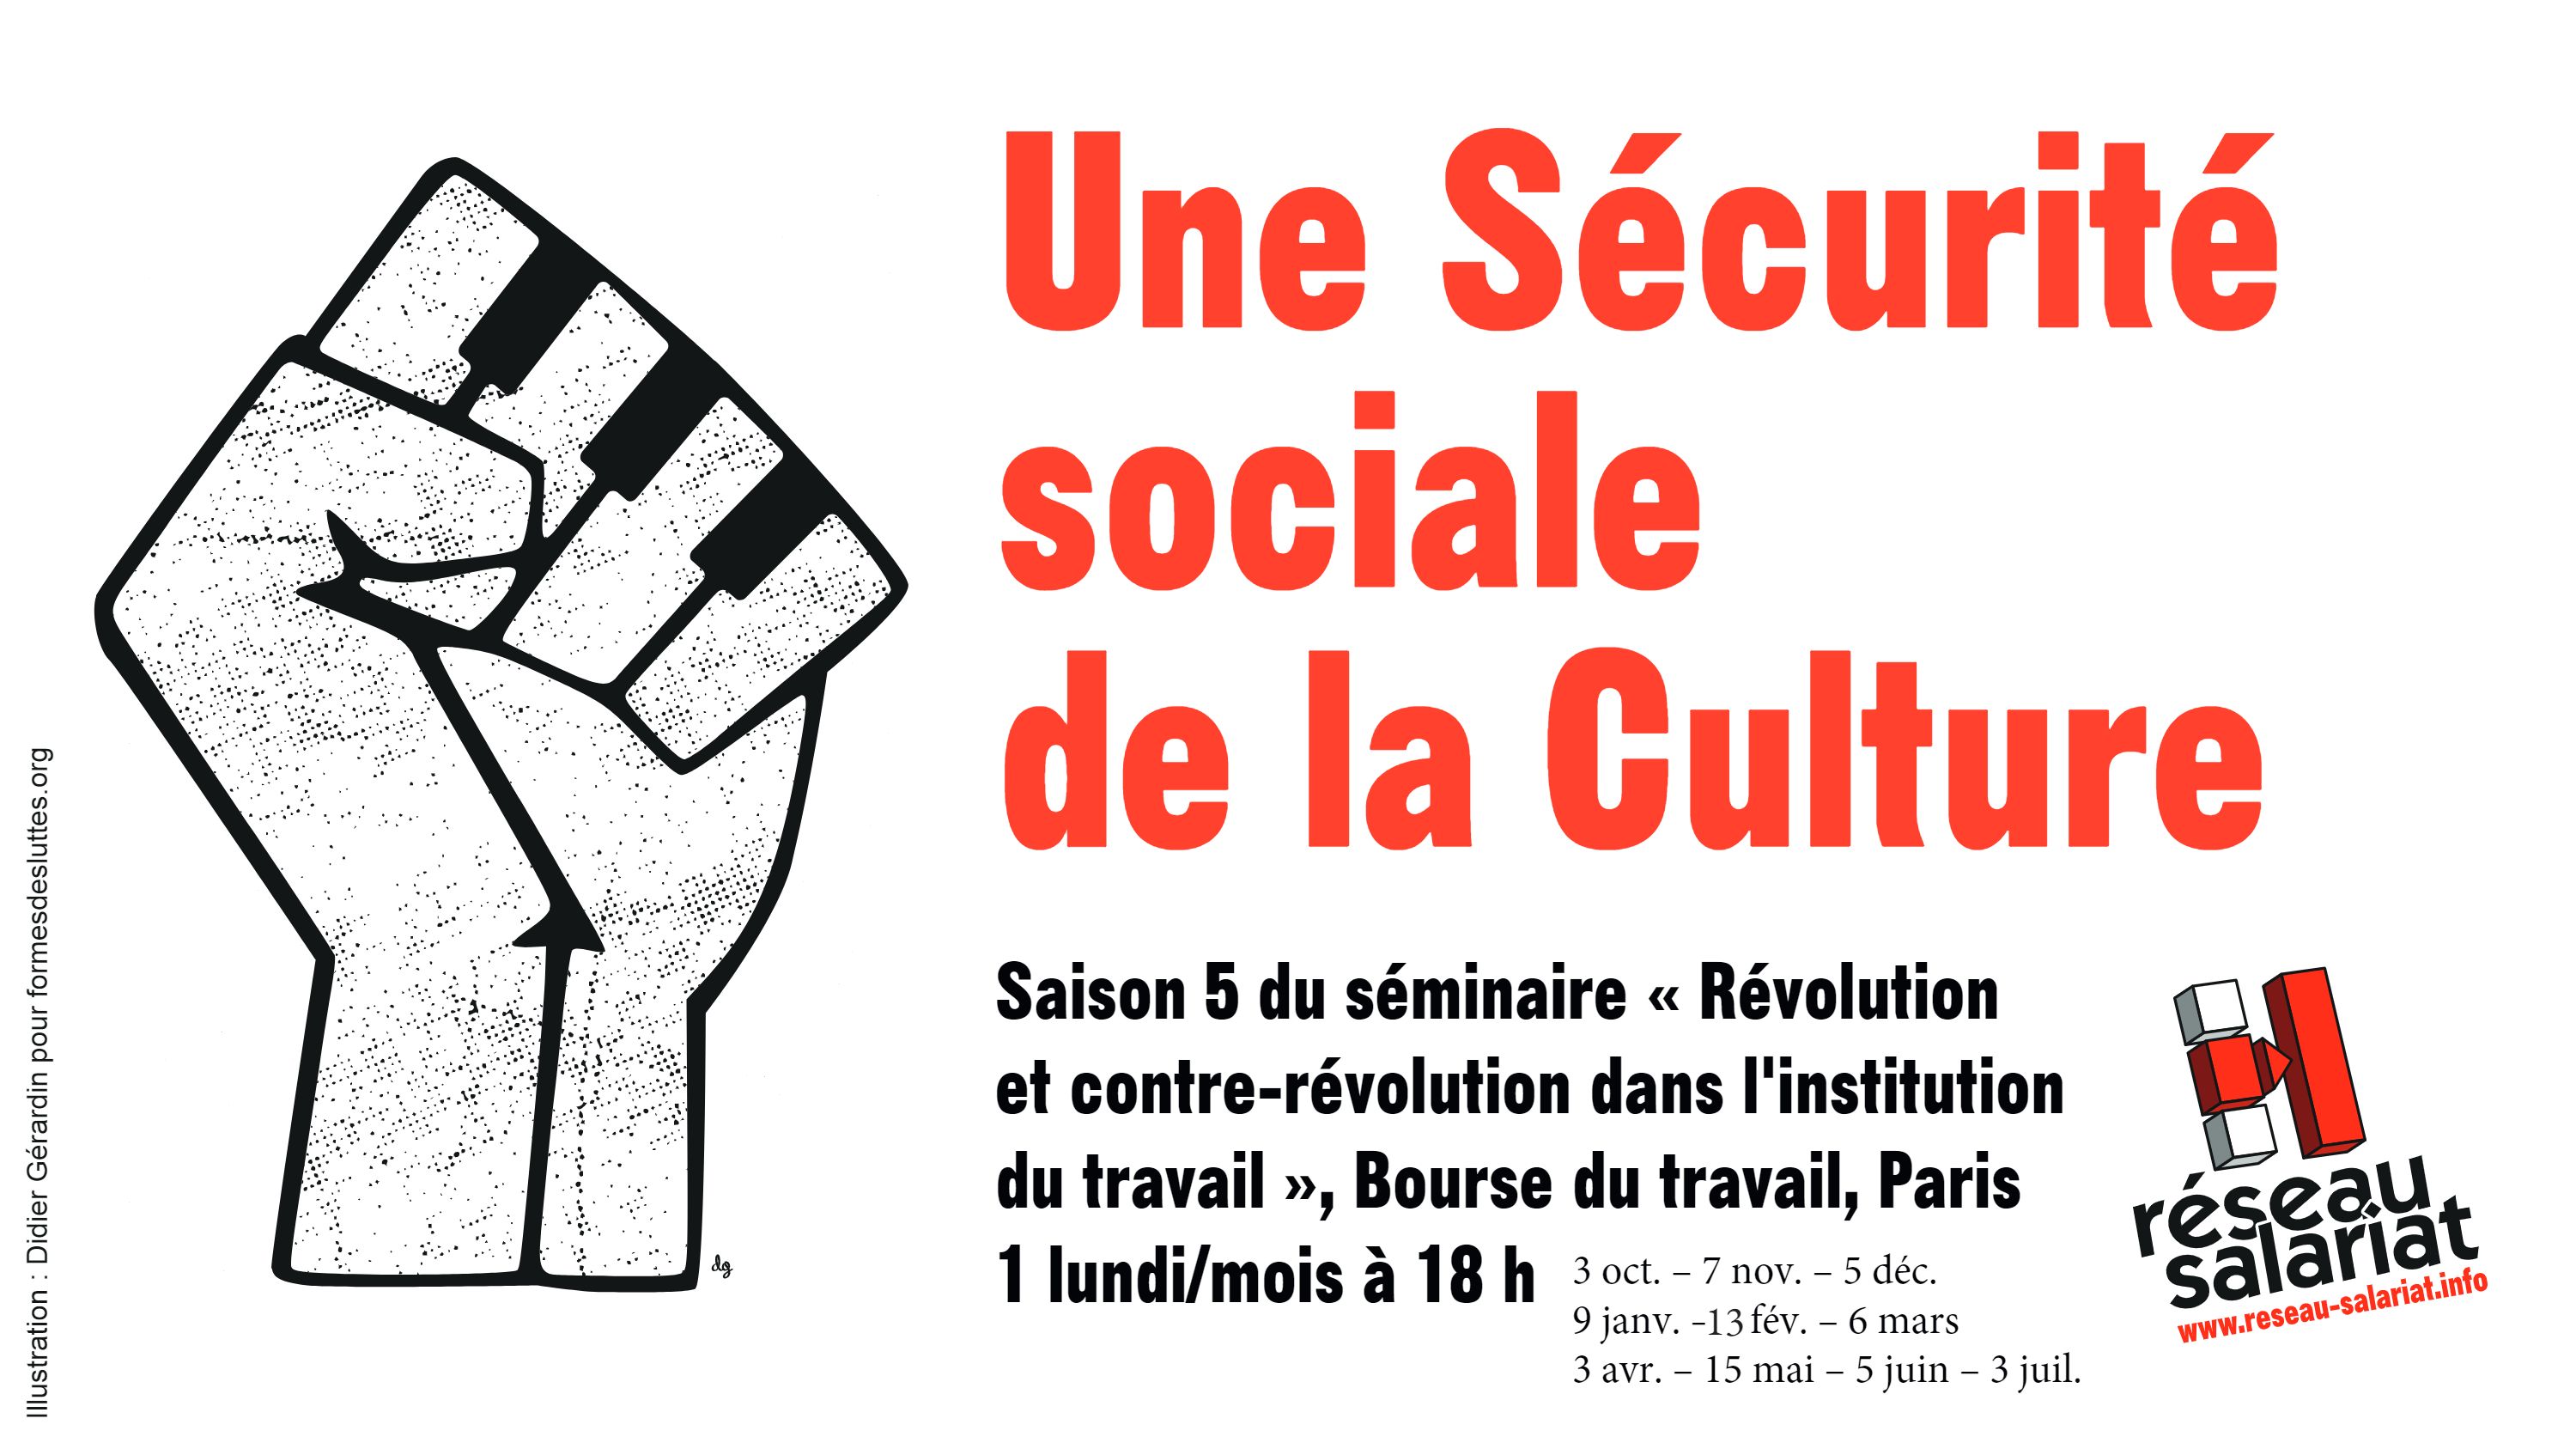 La Sécurité Sociale et la Culture: des idées pour aller de l'avant ...